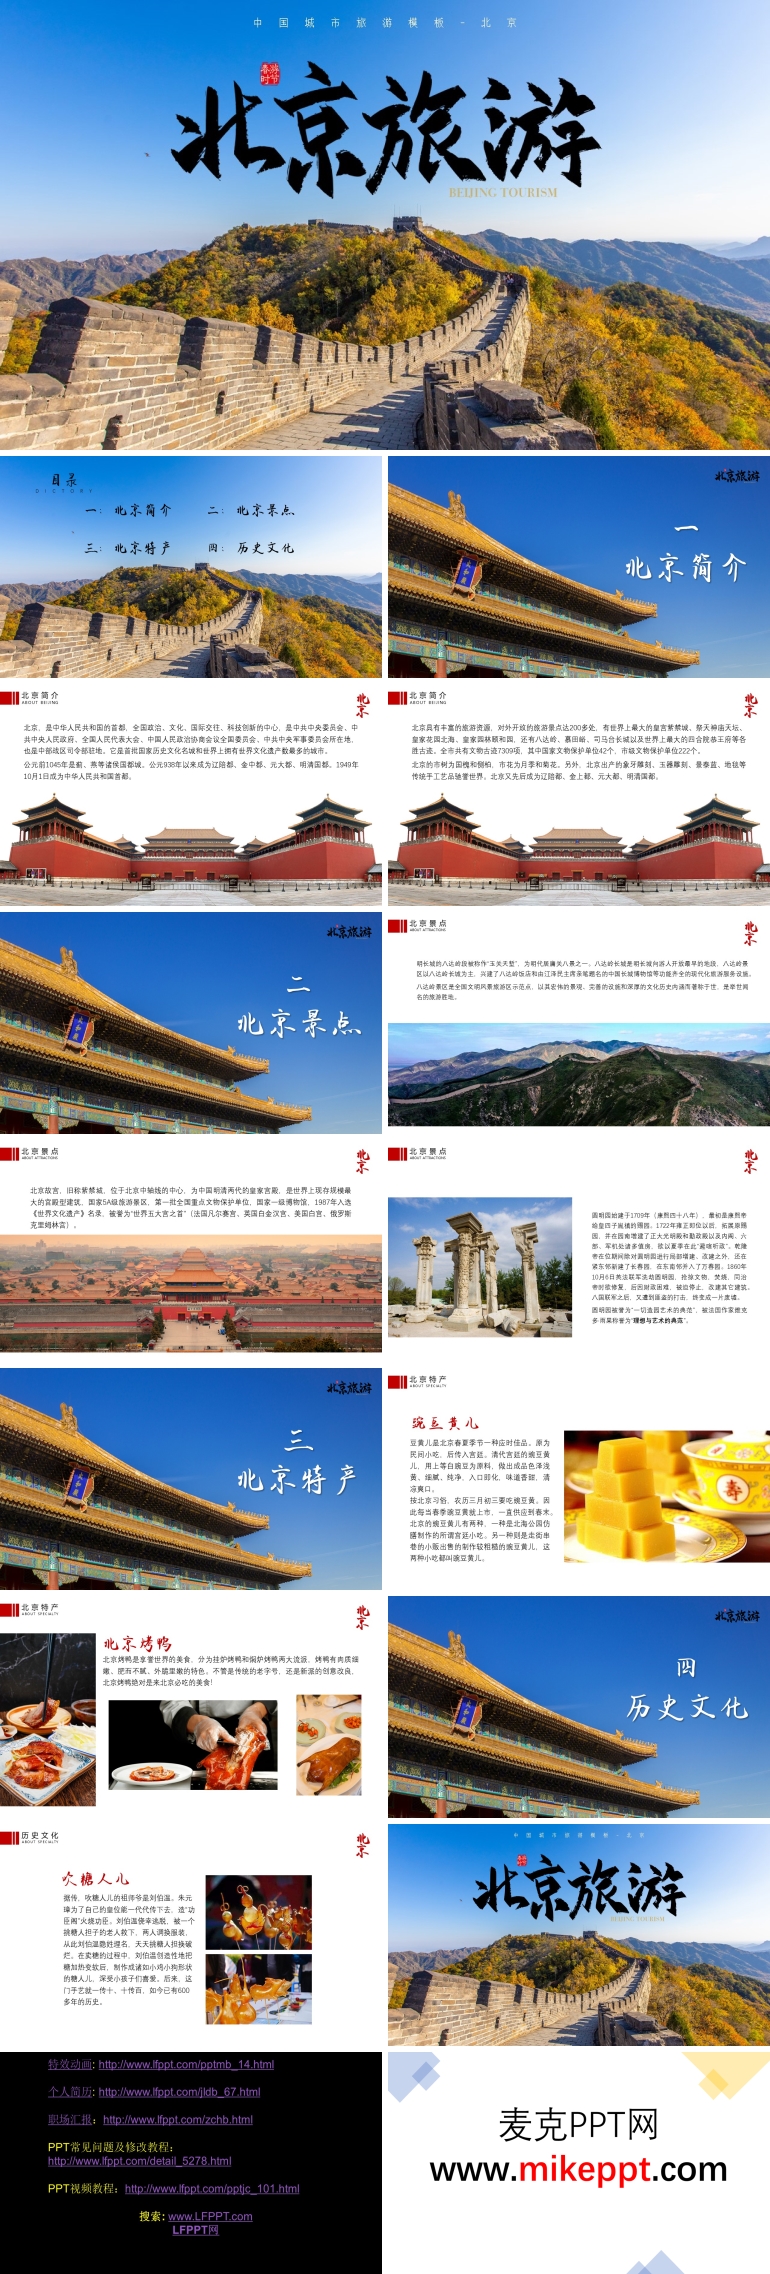 2月份北京旅游景点推荐